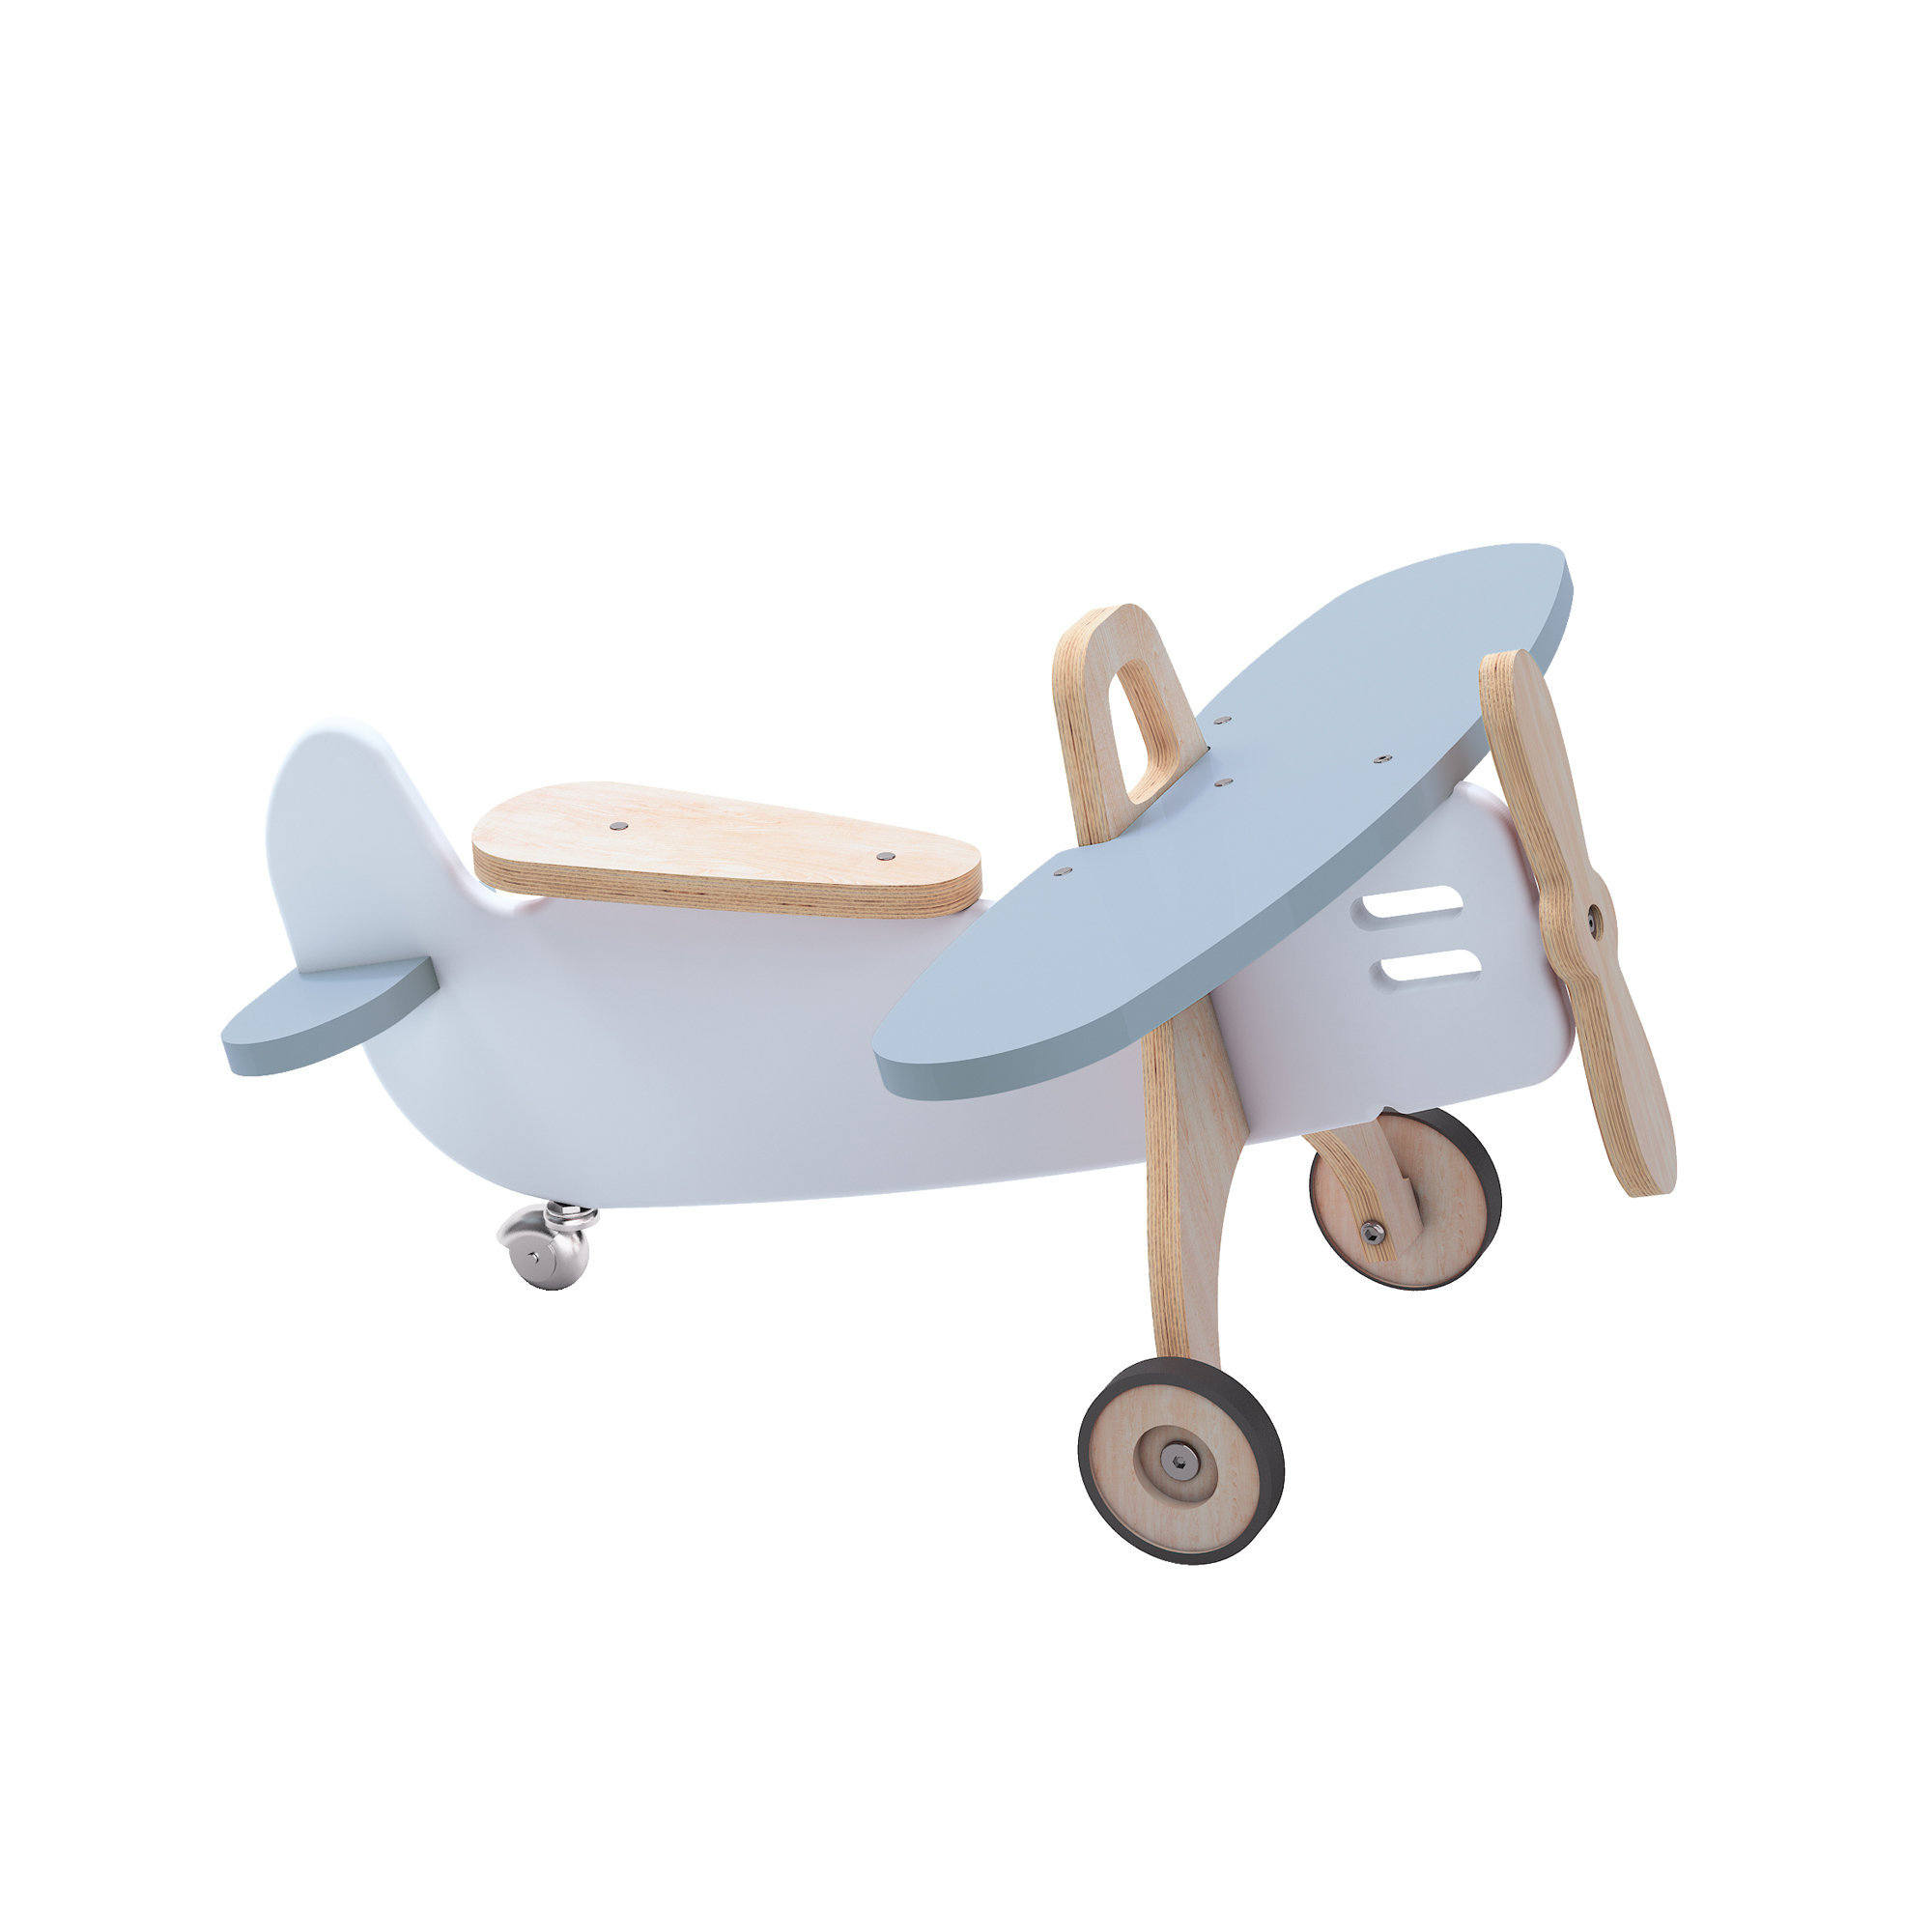 Montessori wooden plane